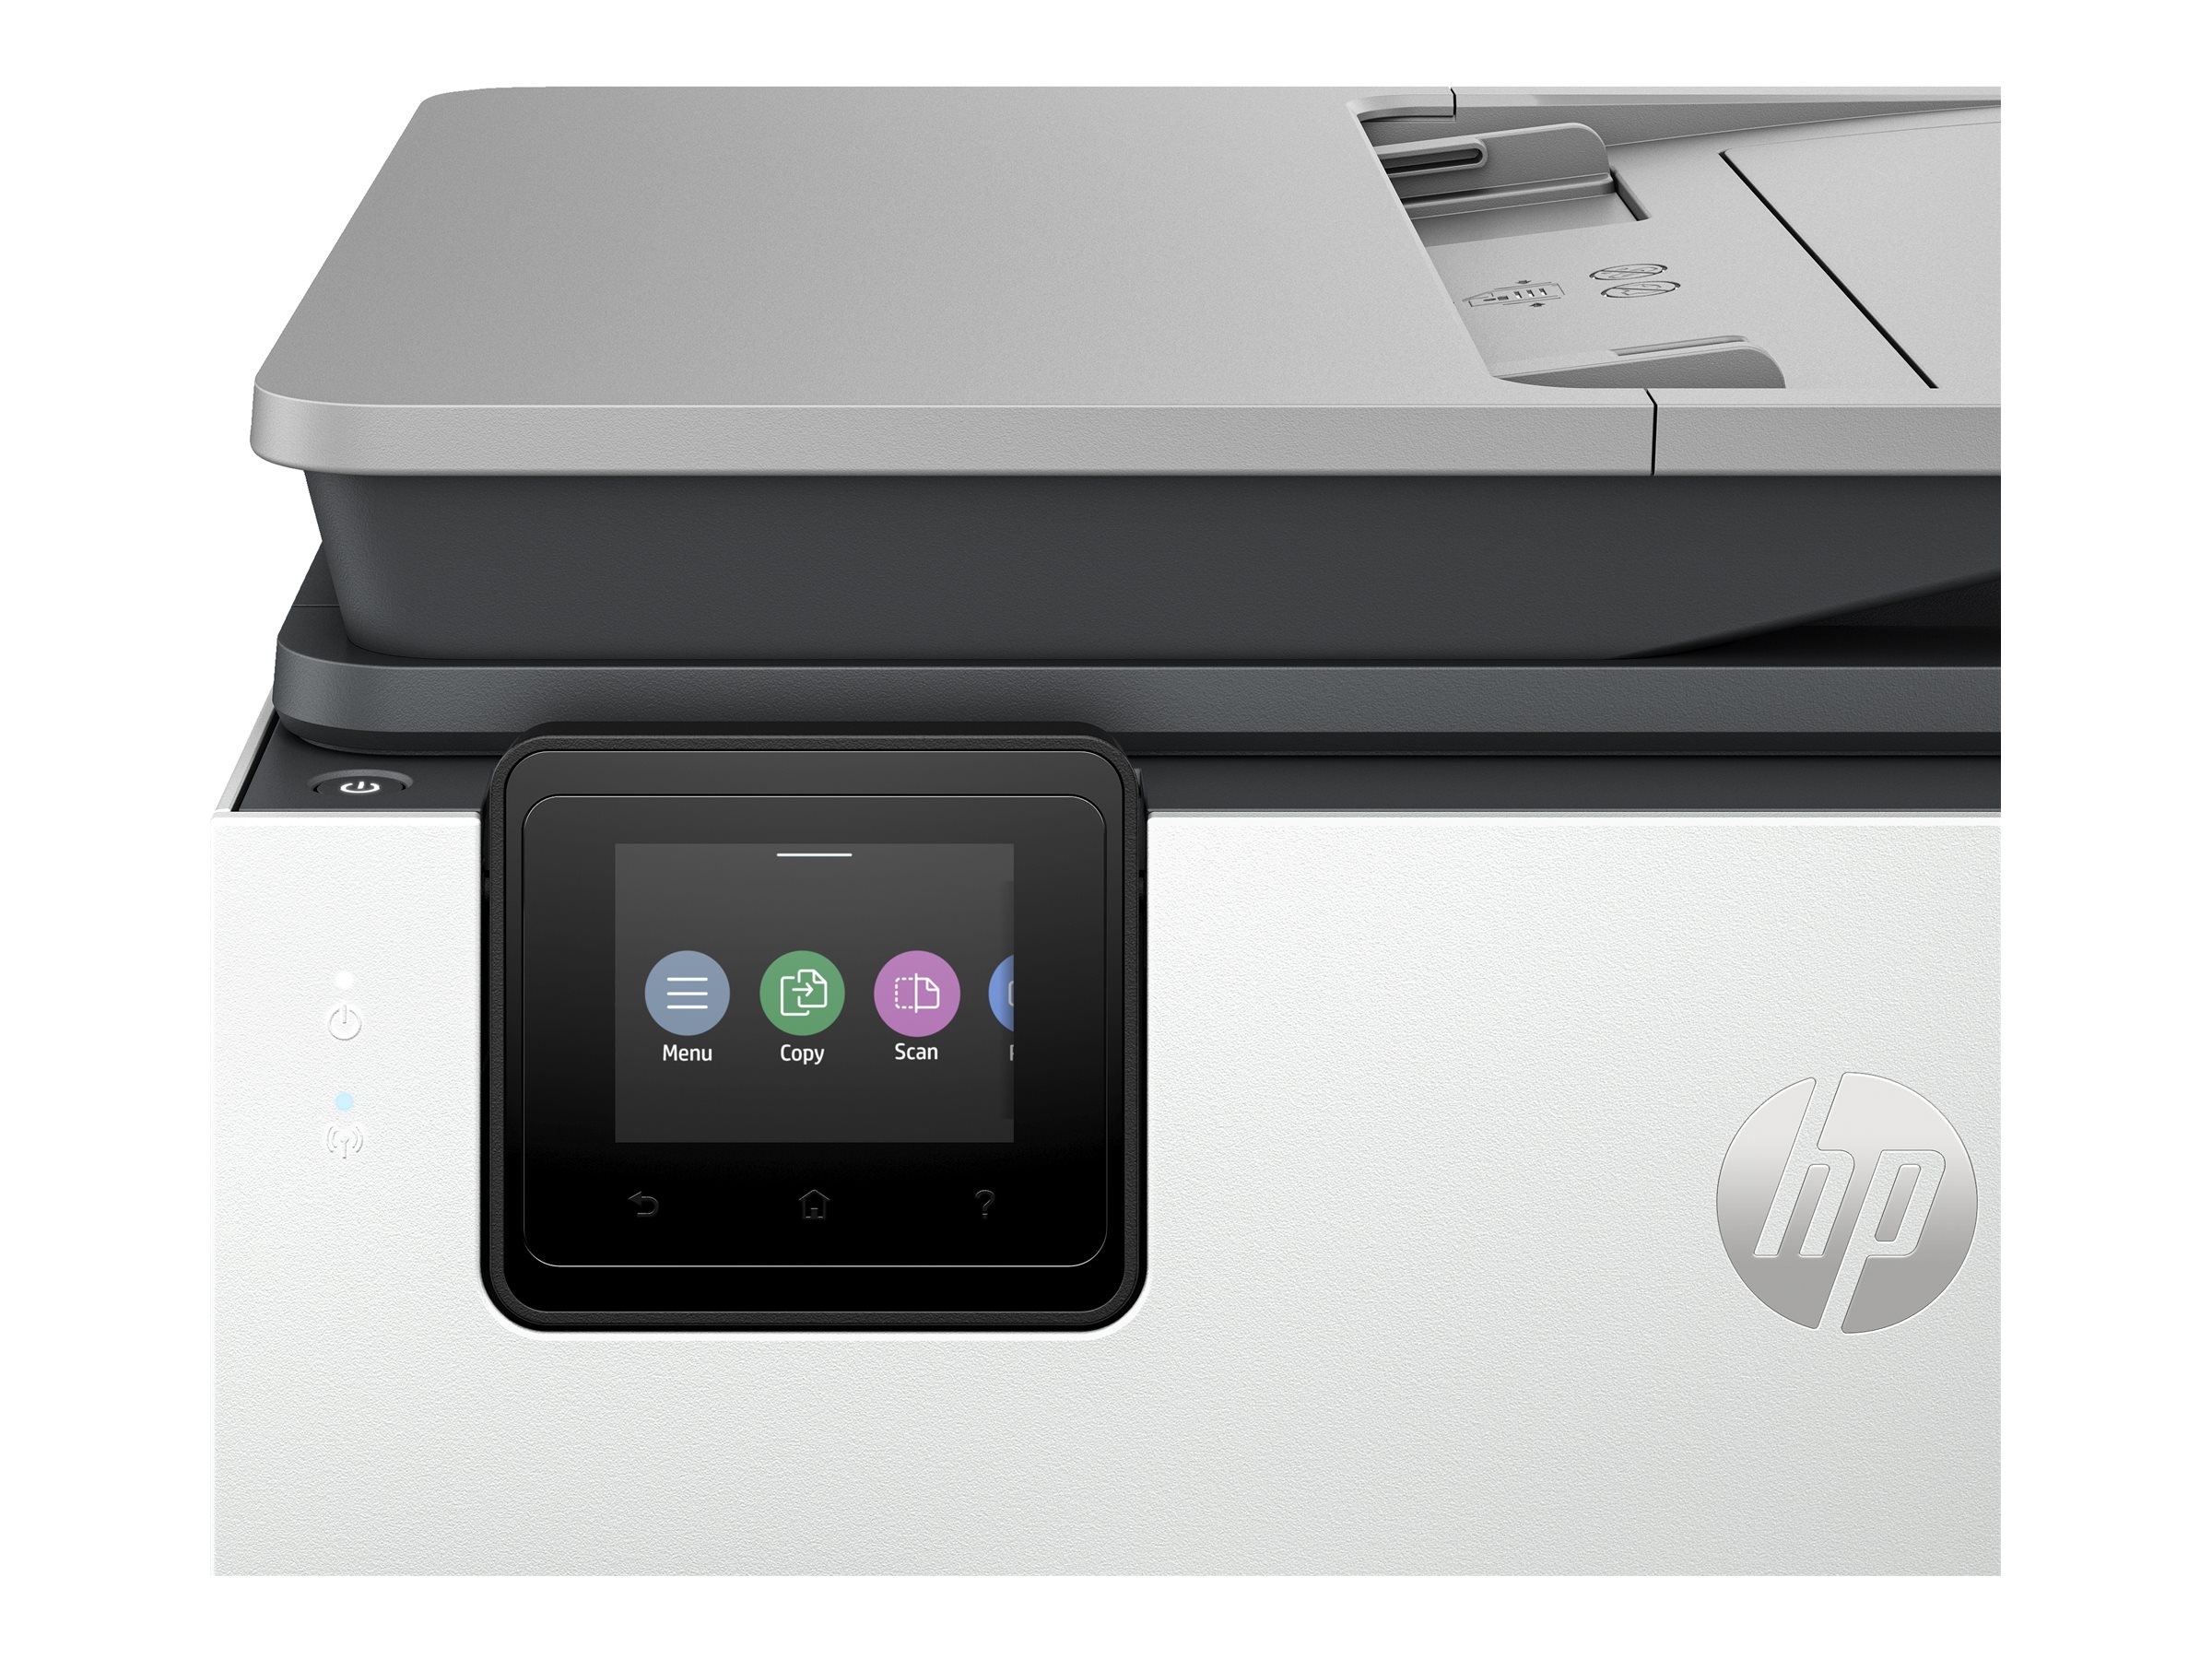 HP Officejet Pro 8124e All-in-One - Imprimante multifonctions - couleur - jet d'encre - Legal (216 x 356 mm) (original) - A4/Legal (support) - jusqu'à 12 ppm (copie) - jusqu'à 20 ppm (impression) - 225 feuilles - USB 2.0, LAN, Wi-Fi(ac) - ciment léger - 405U7B#629 - Imprimantes multifonctions